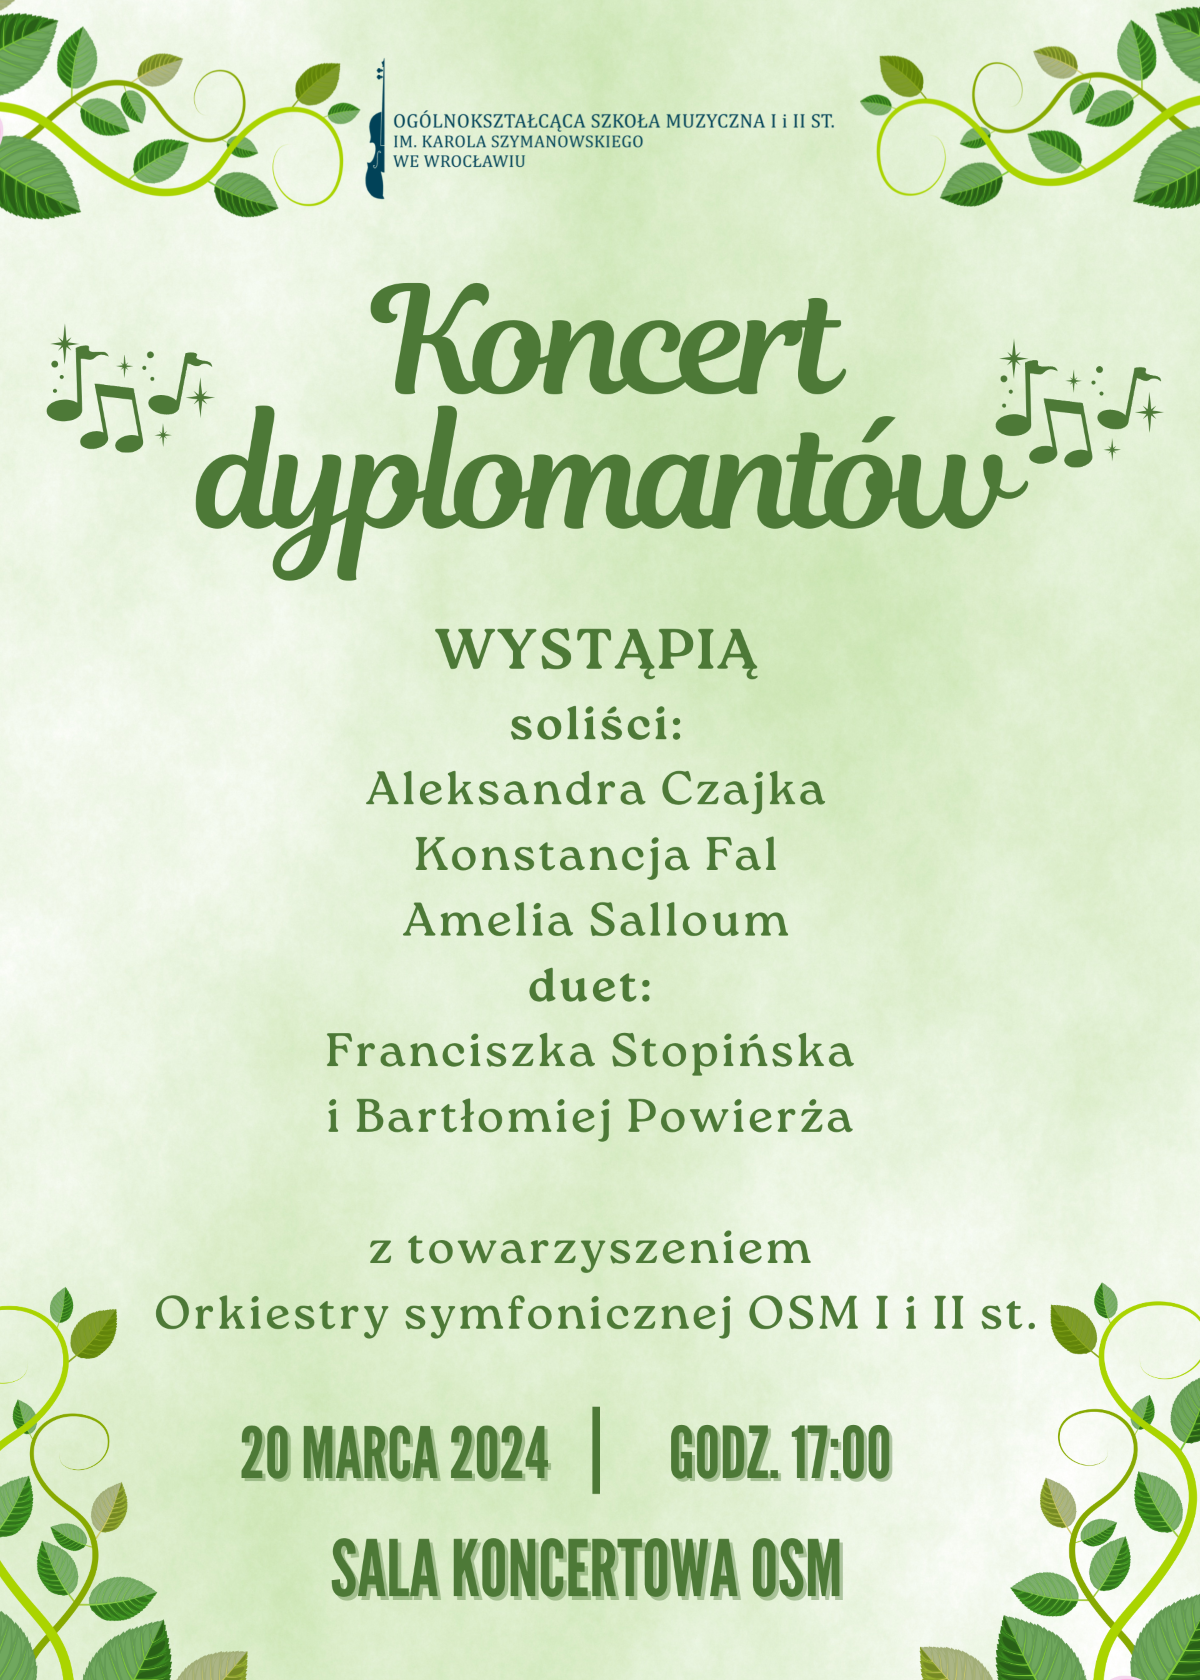 plakat w zielonej tonacji, zawiera napis:" Koncert Dyplomantów"